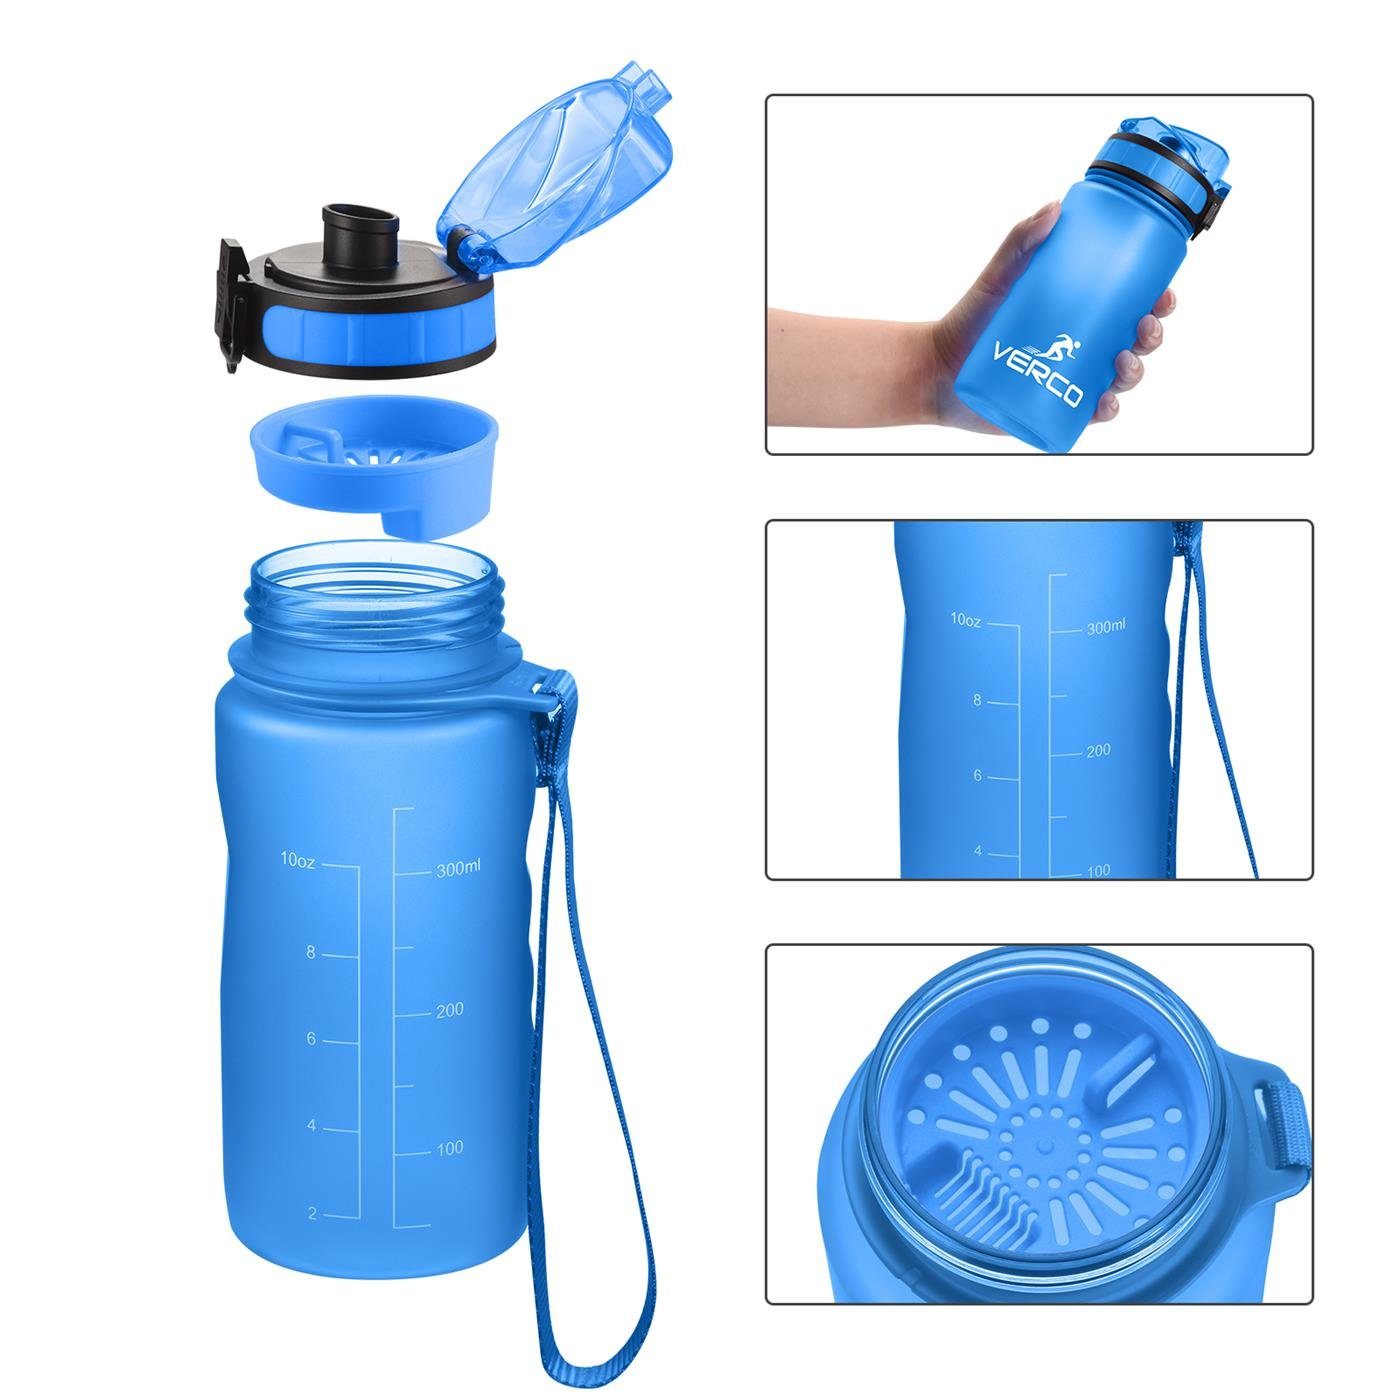 mit Flasche, BPA Fruchtsieb Trinkflasche 350 VERCO Blau Sport Tritan Liter Frei 0,35 ml nachhaltig Wasserflasche wiederverwendbar